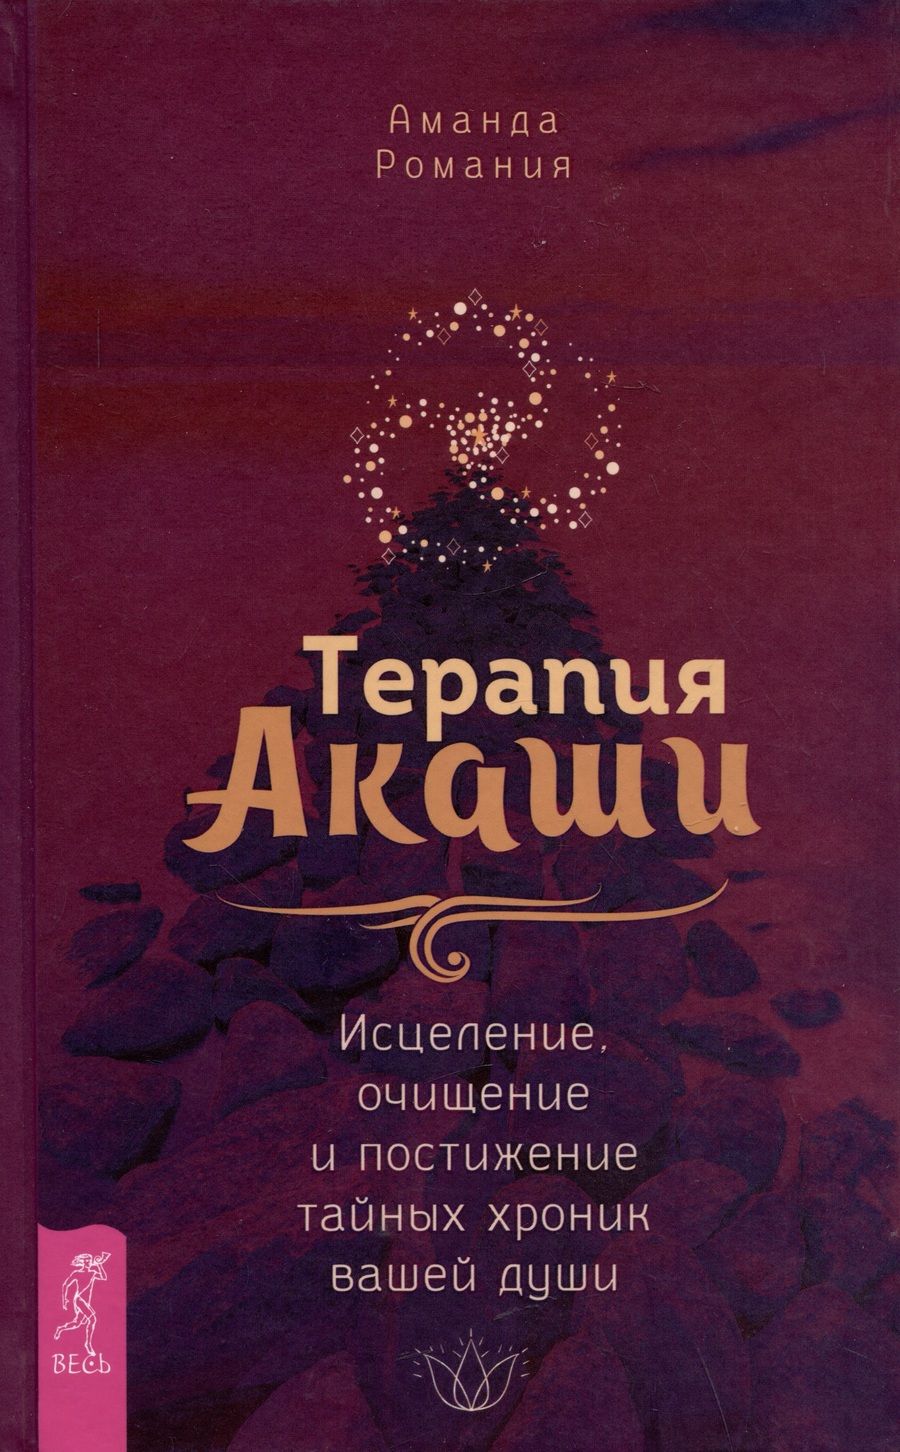 Обложка книги "Романия: Терапия Акаши. Исцеление, очищение и постижение тайных хроник вашей души"